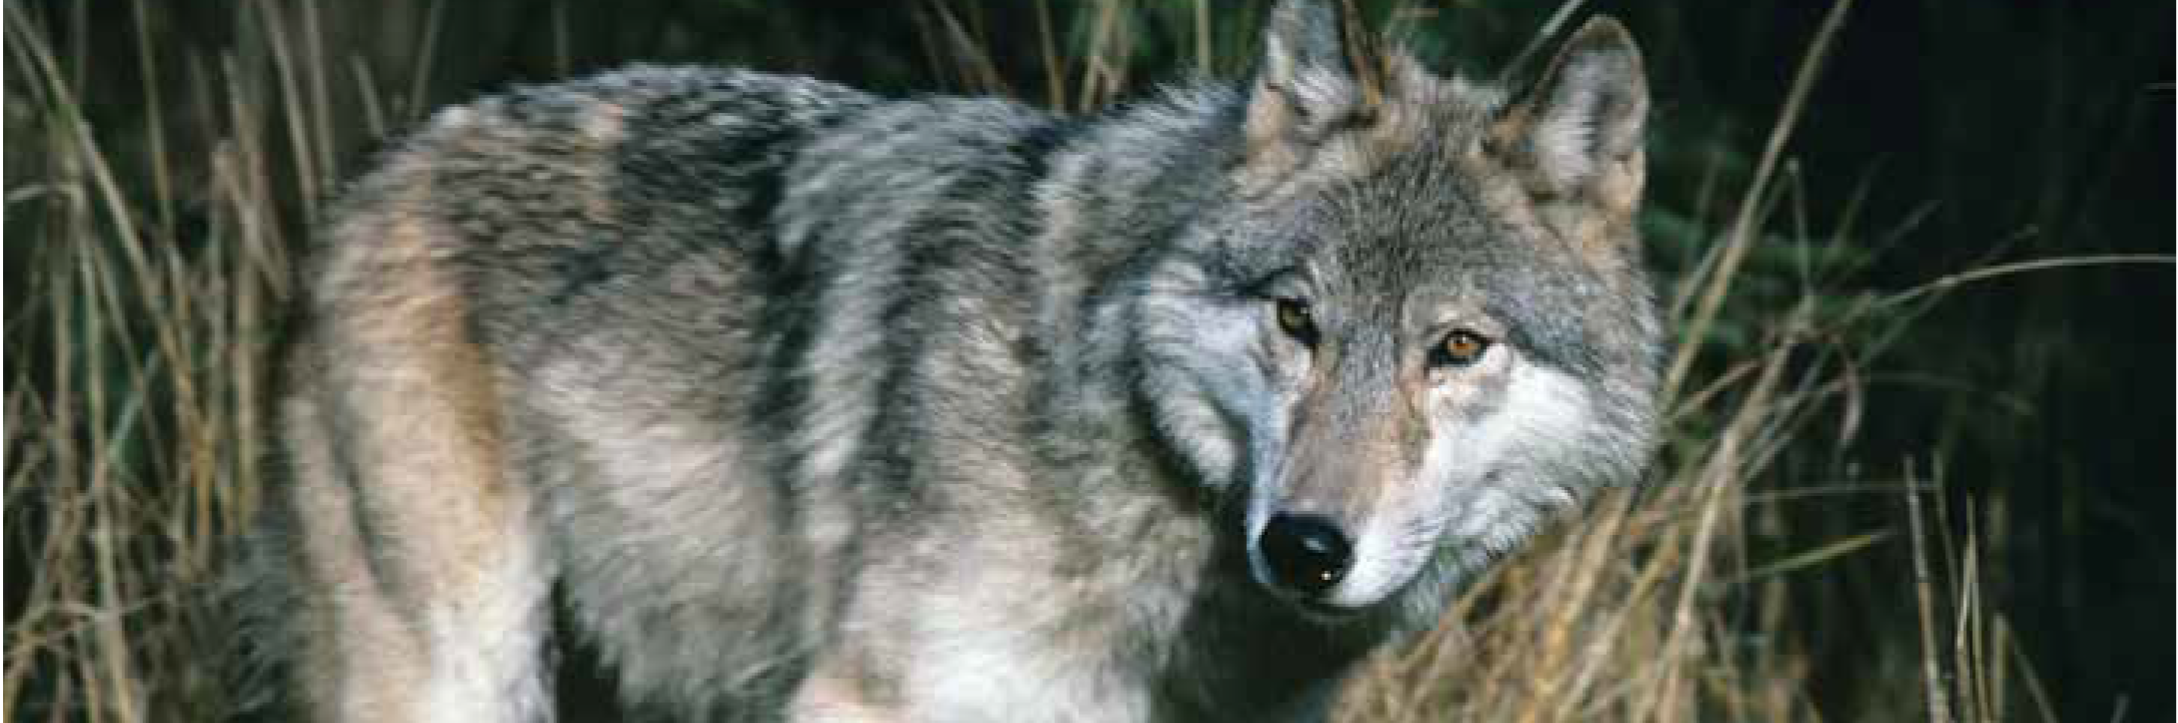 Photo de loup et coyote